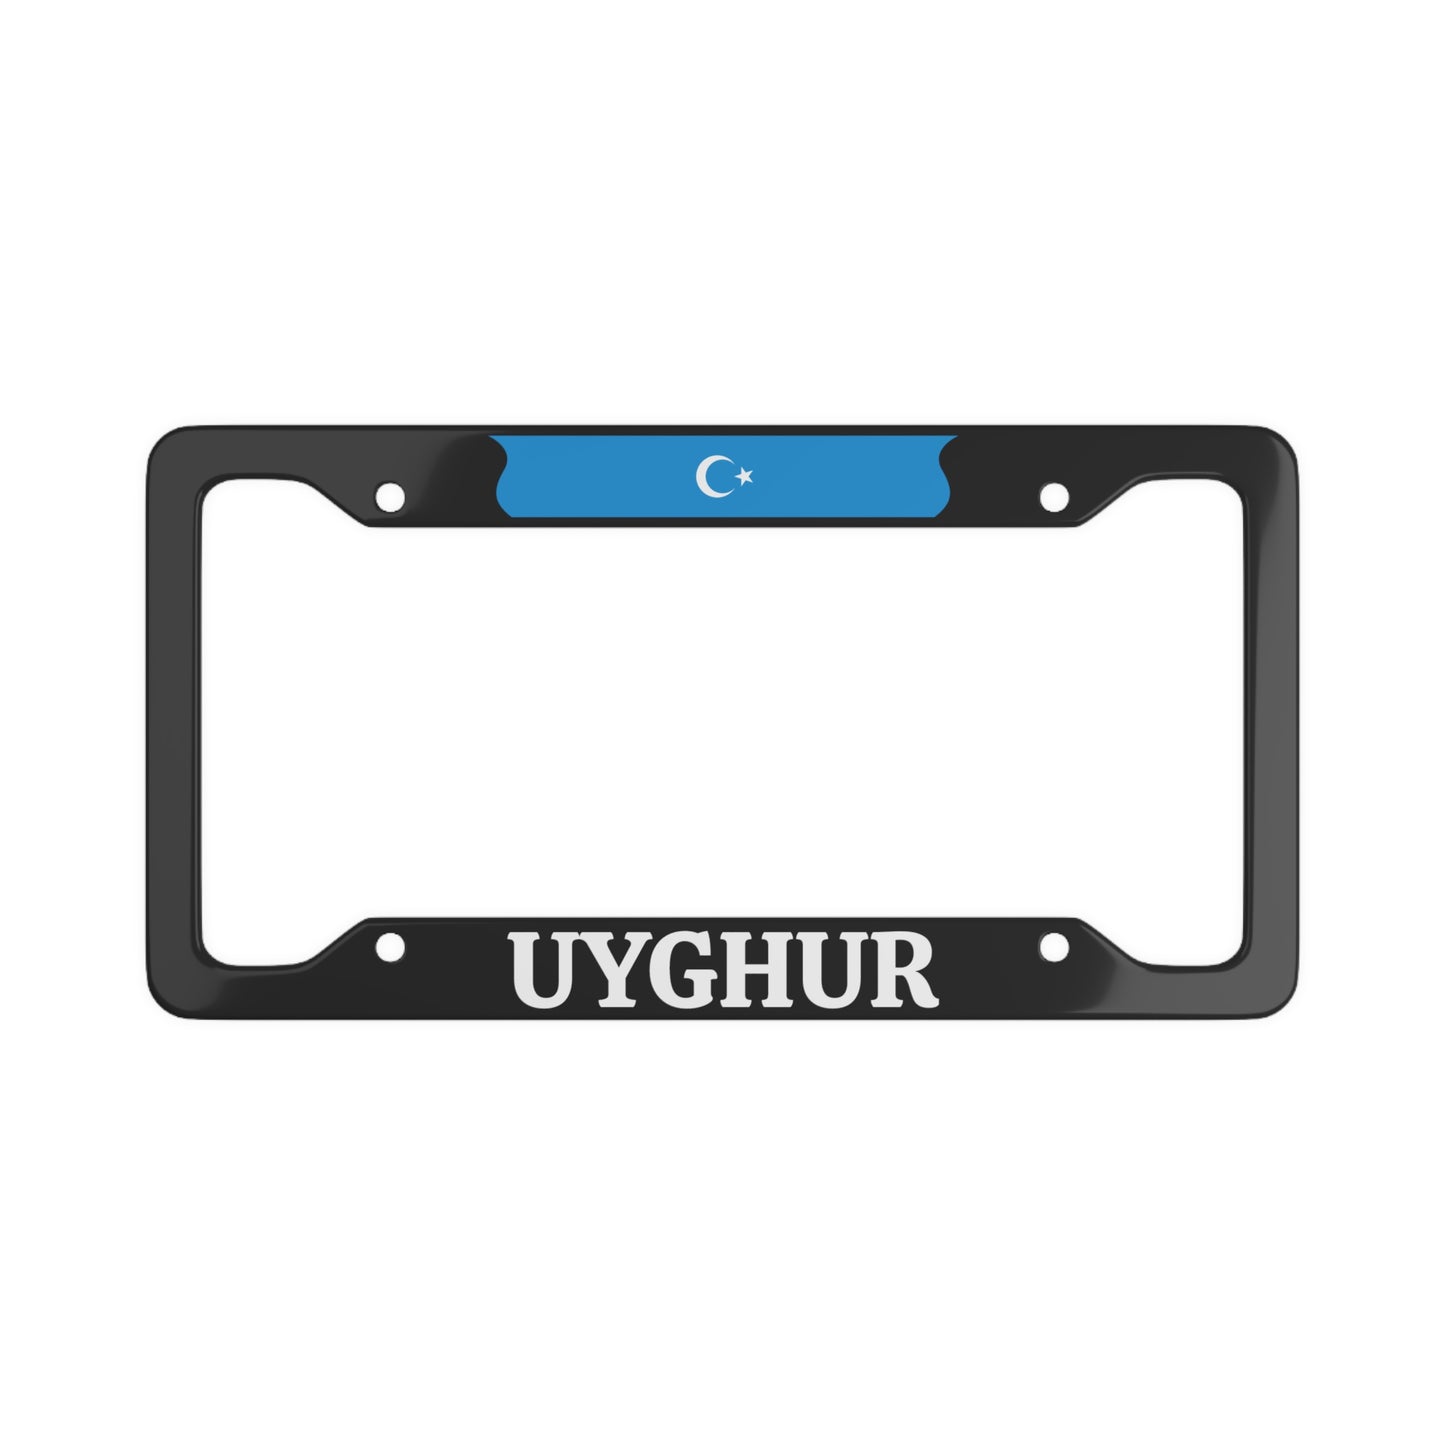 UYGHUR License Plate Frame